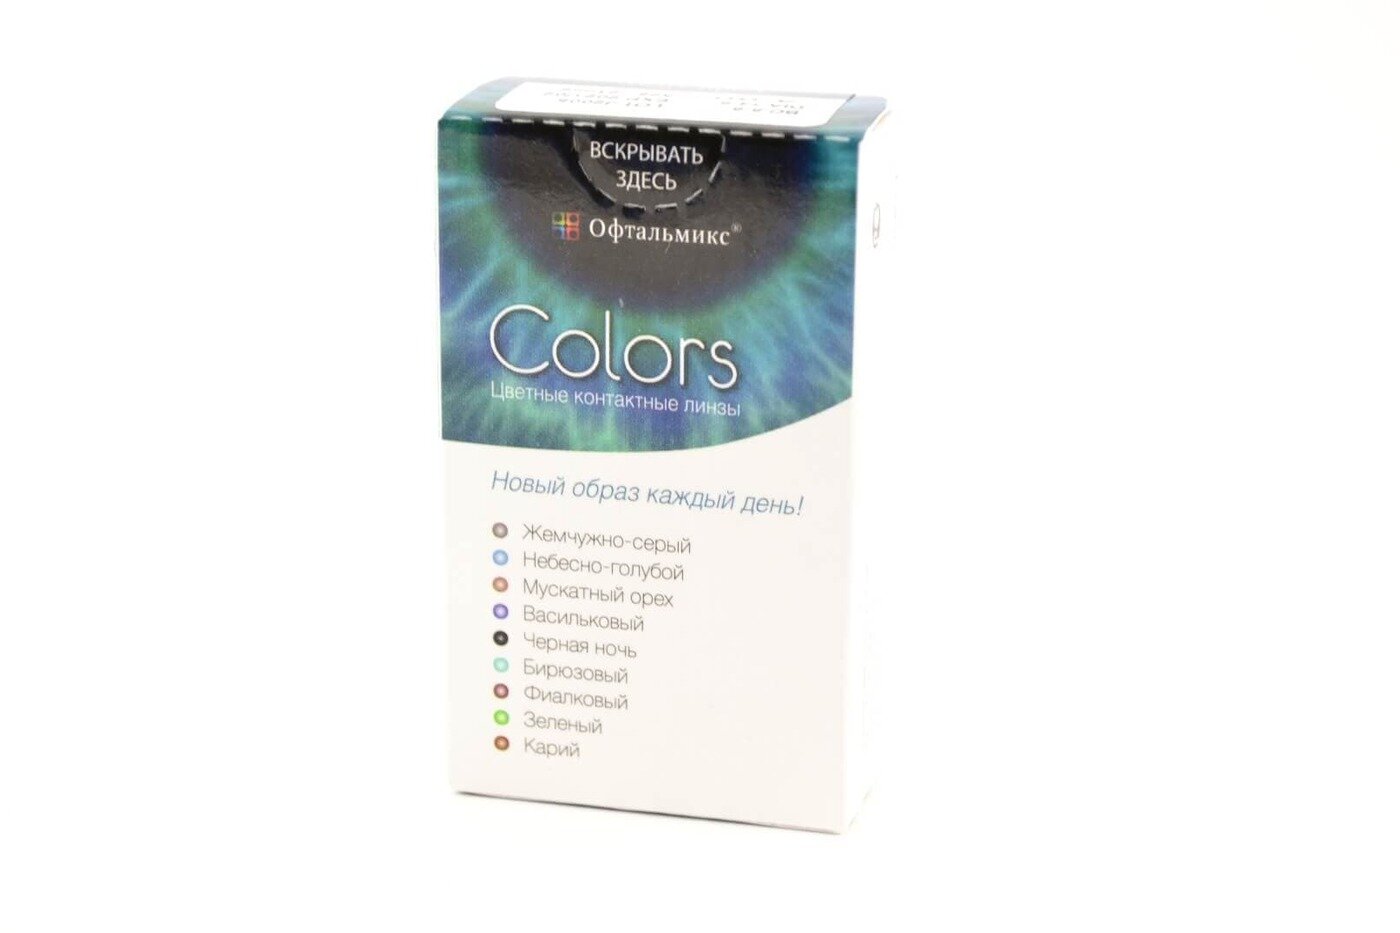 Офтальмикс Colors New (2 линзы)-1.00 R.8.6 Violet(Фиалковый)